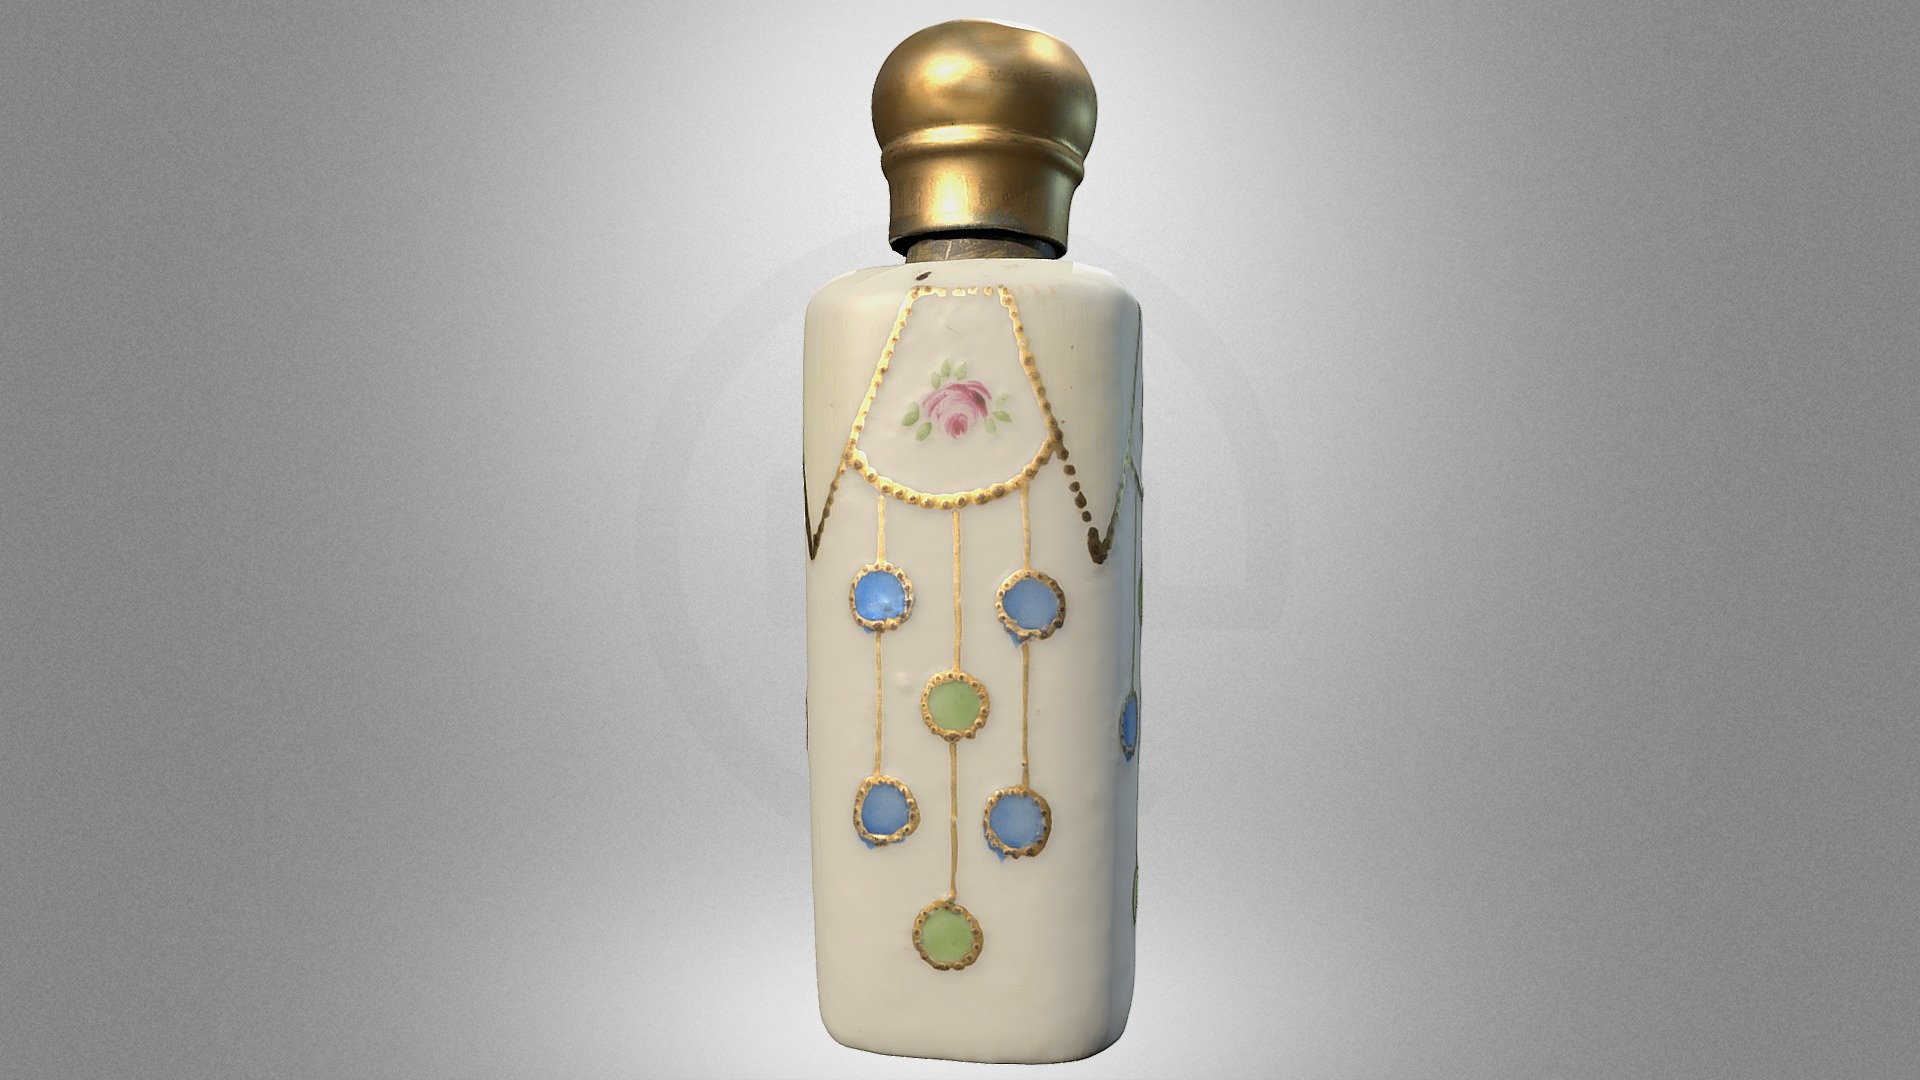 Art Nouveau perfume bottle